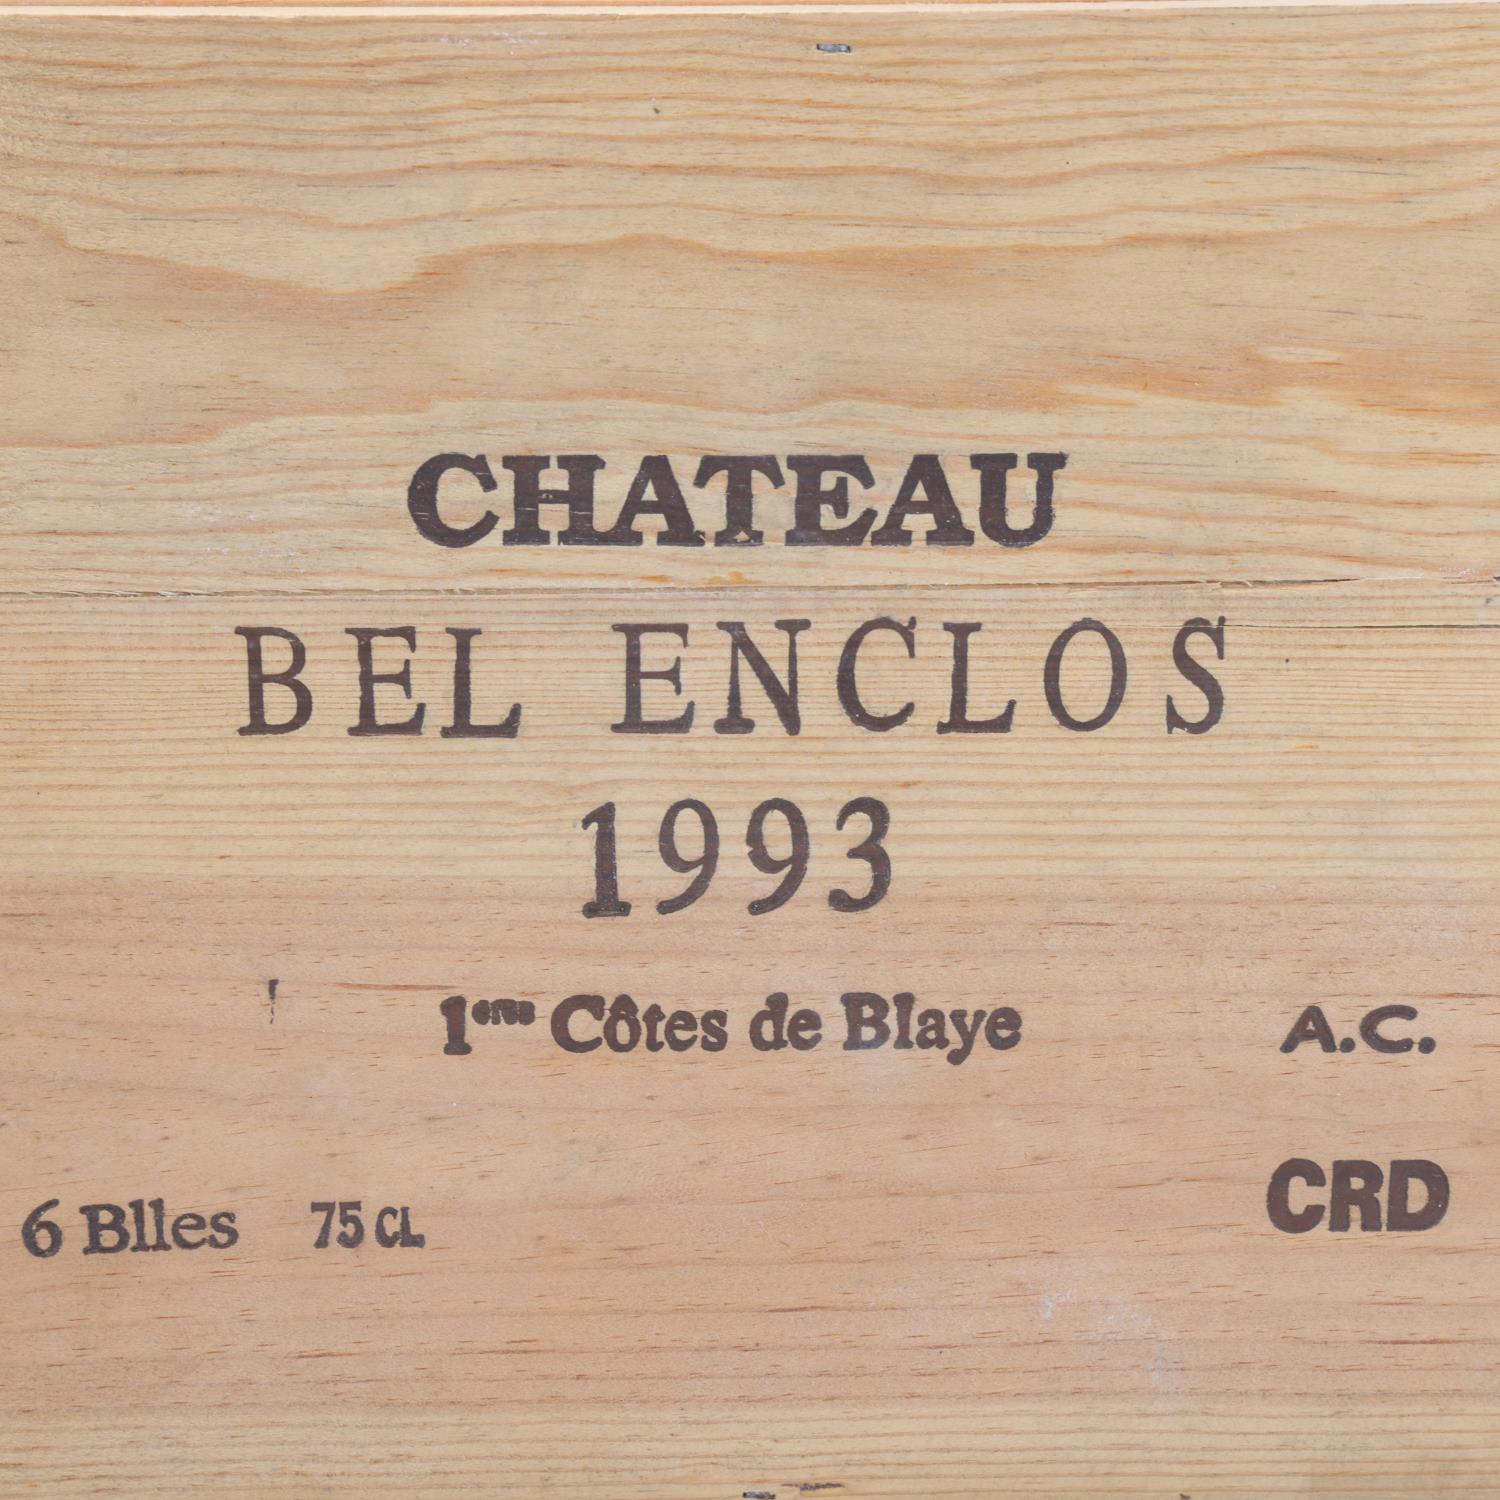 6 bottles of 1993 Chateau Bel Enclos, Cotes de Blaye, Bordeaux, sealed OWC - Image 2 of 3